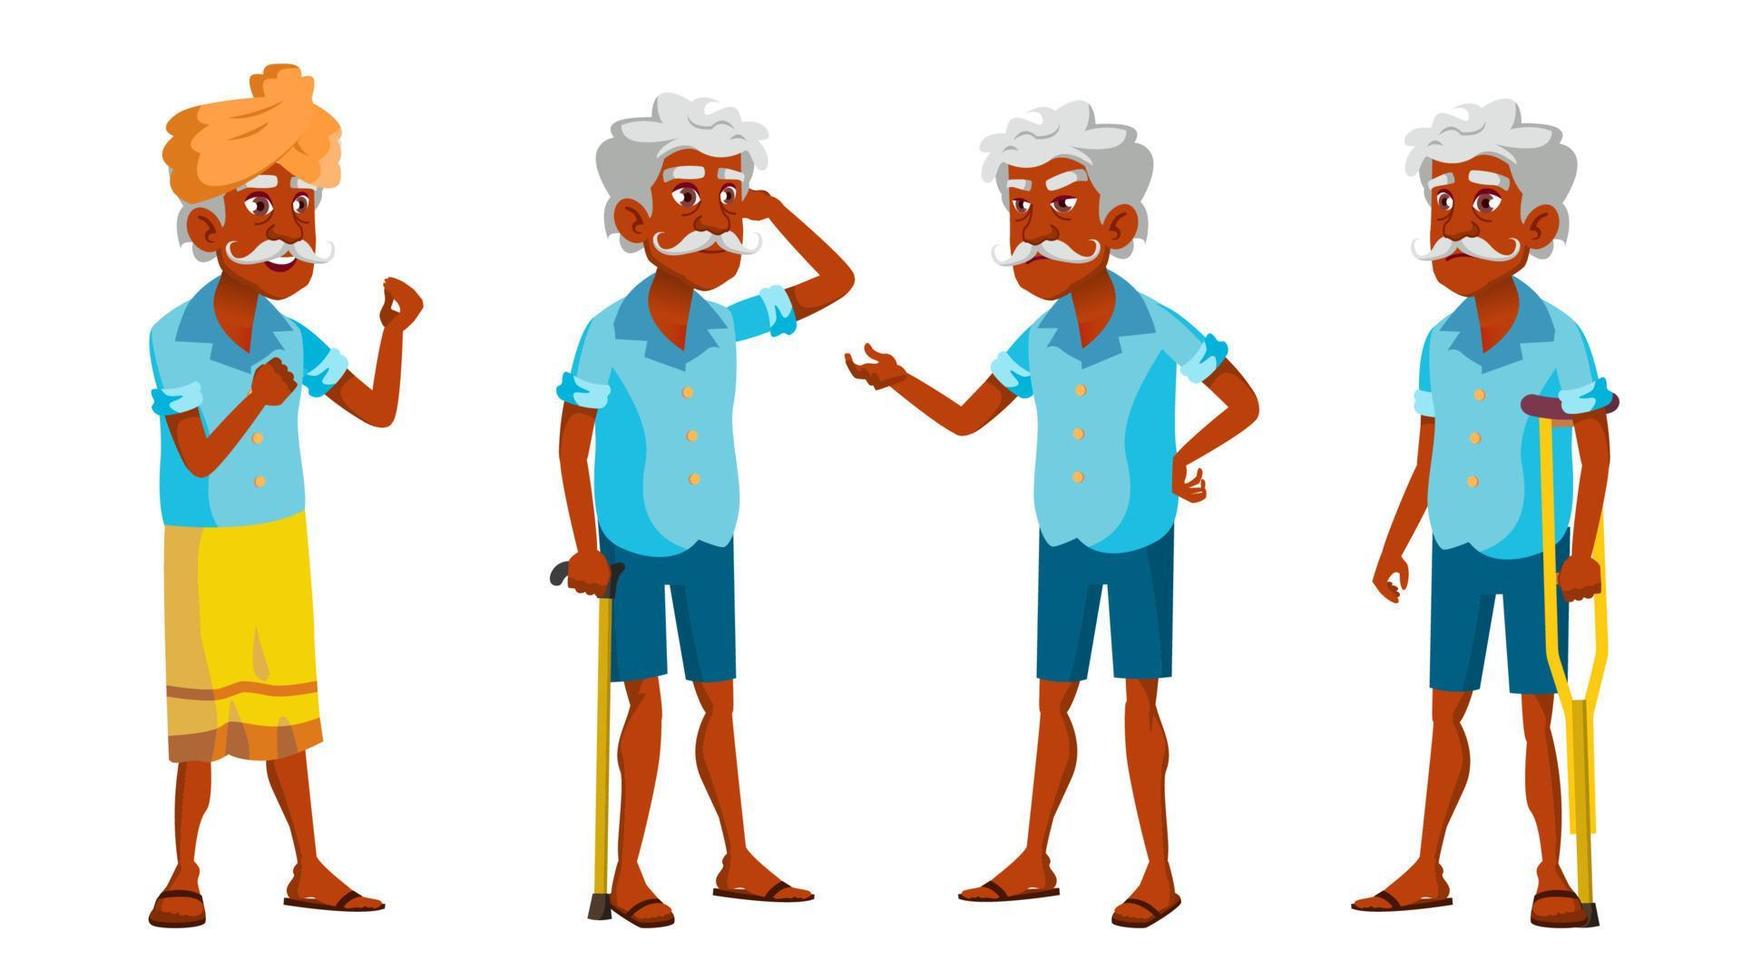 el anciano indio posa en un vector. personas de edad avanzada. persona mayor Envejecido. abuelo amable. hindú. asiático. banner, volante, diseño de folleto. ilustración de dibujos animados aislados vector